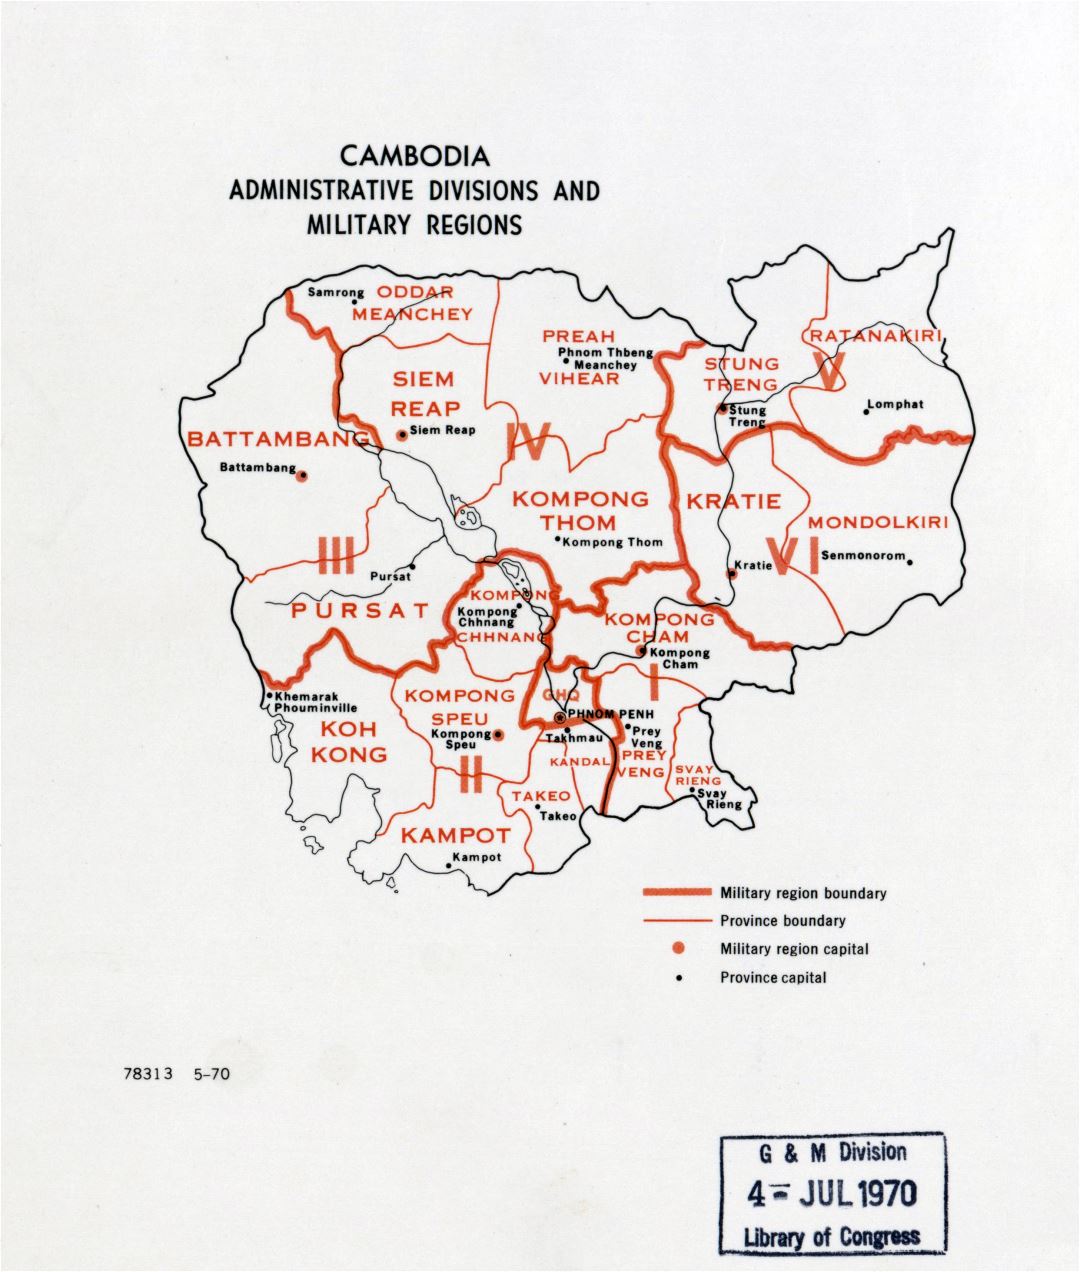 Grande detallado administrativas divisiones y regiones militares mapa de Camboya - 1970